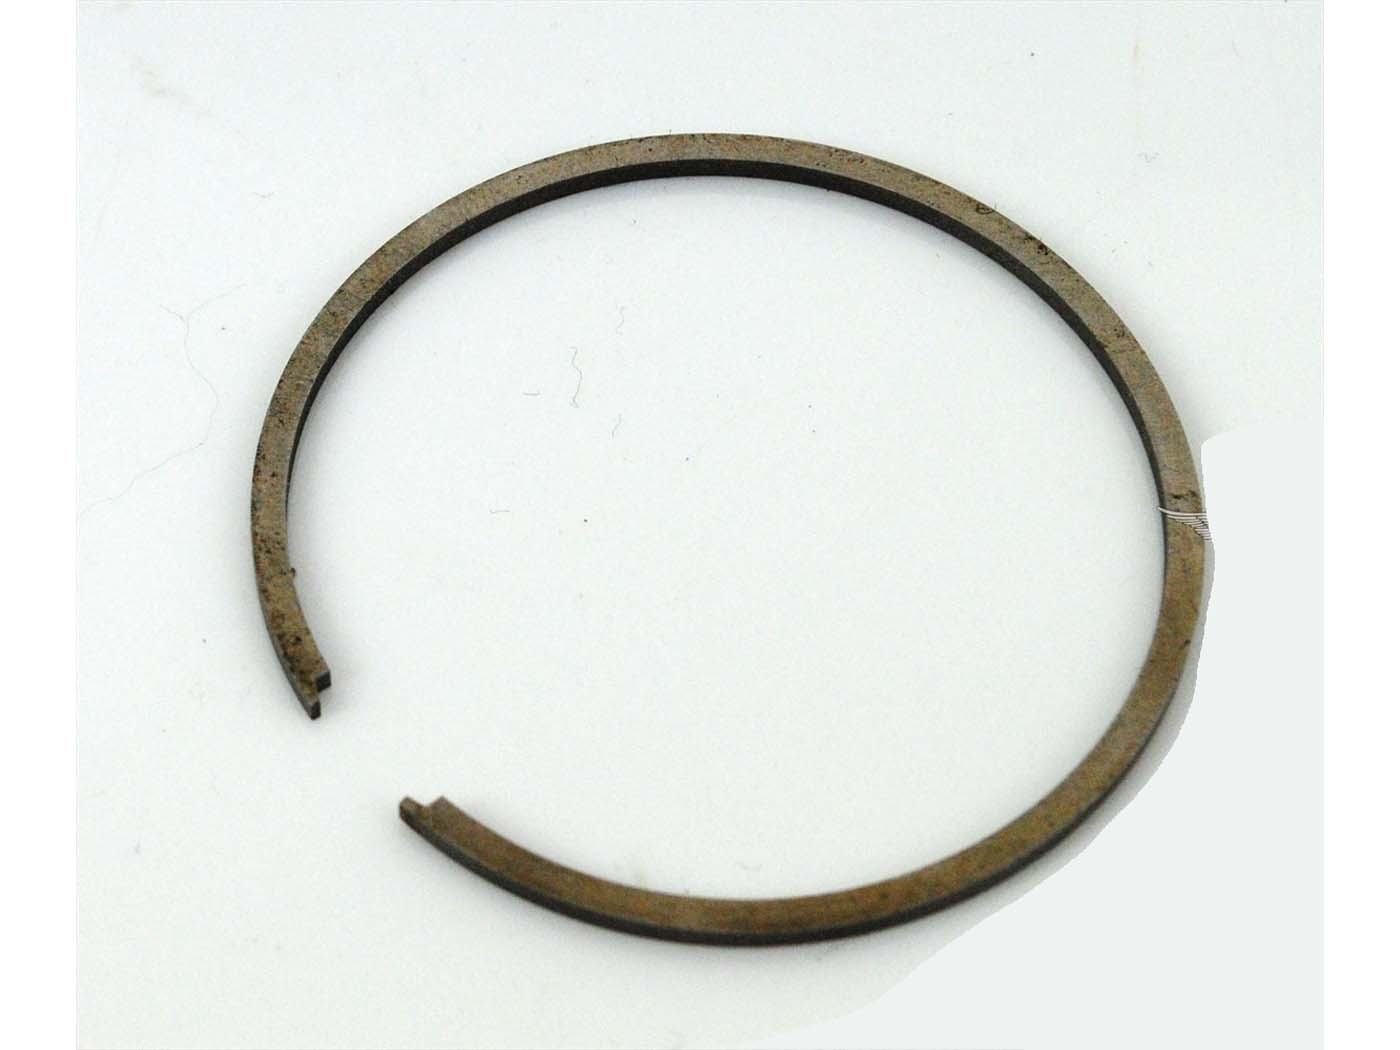 Rechteck Ring 46mm 46 x 1,5mm voor Zündapp KS 80, K 80, KS 80 Super